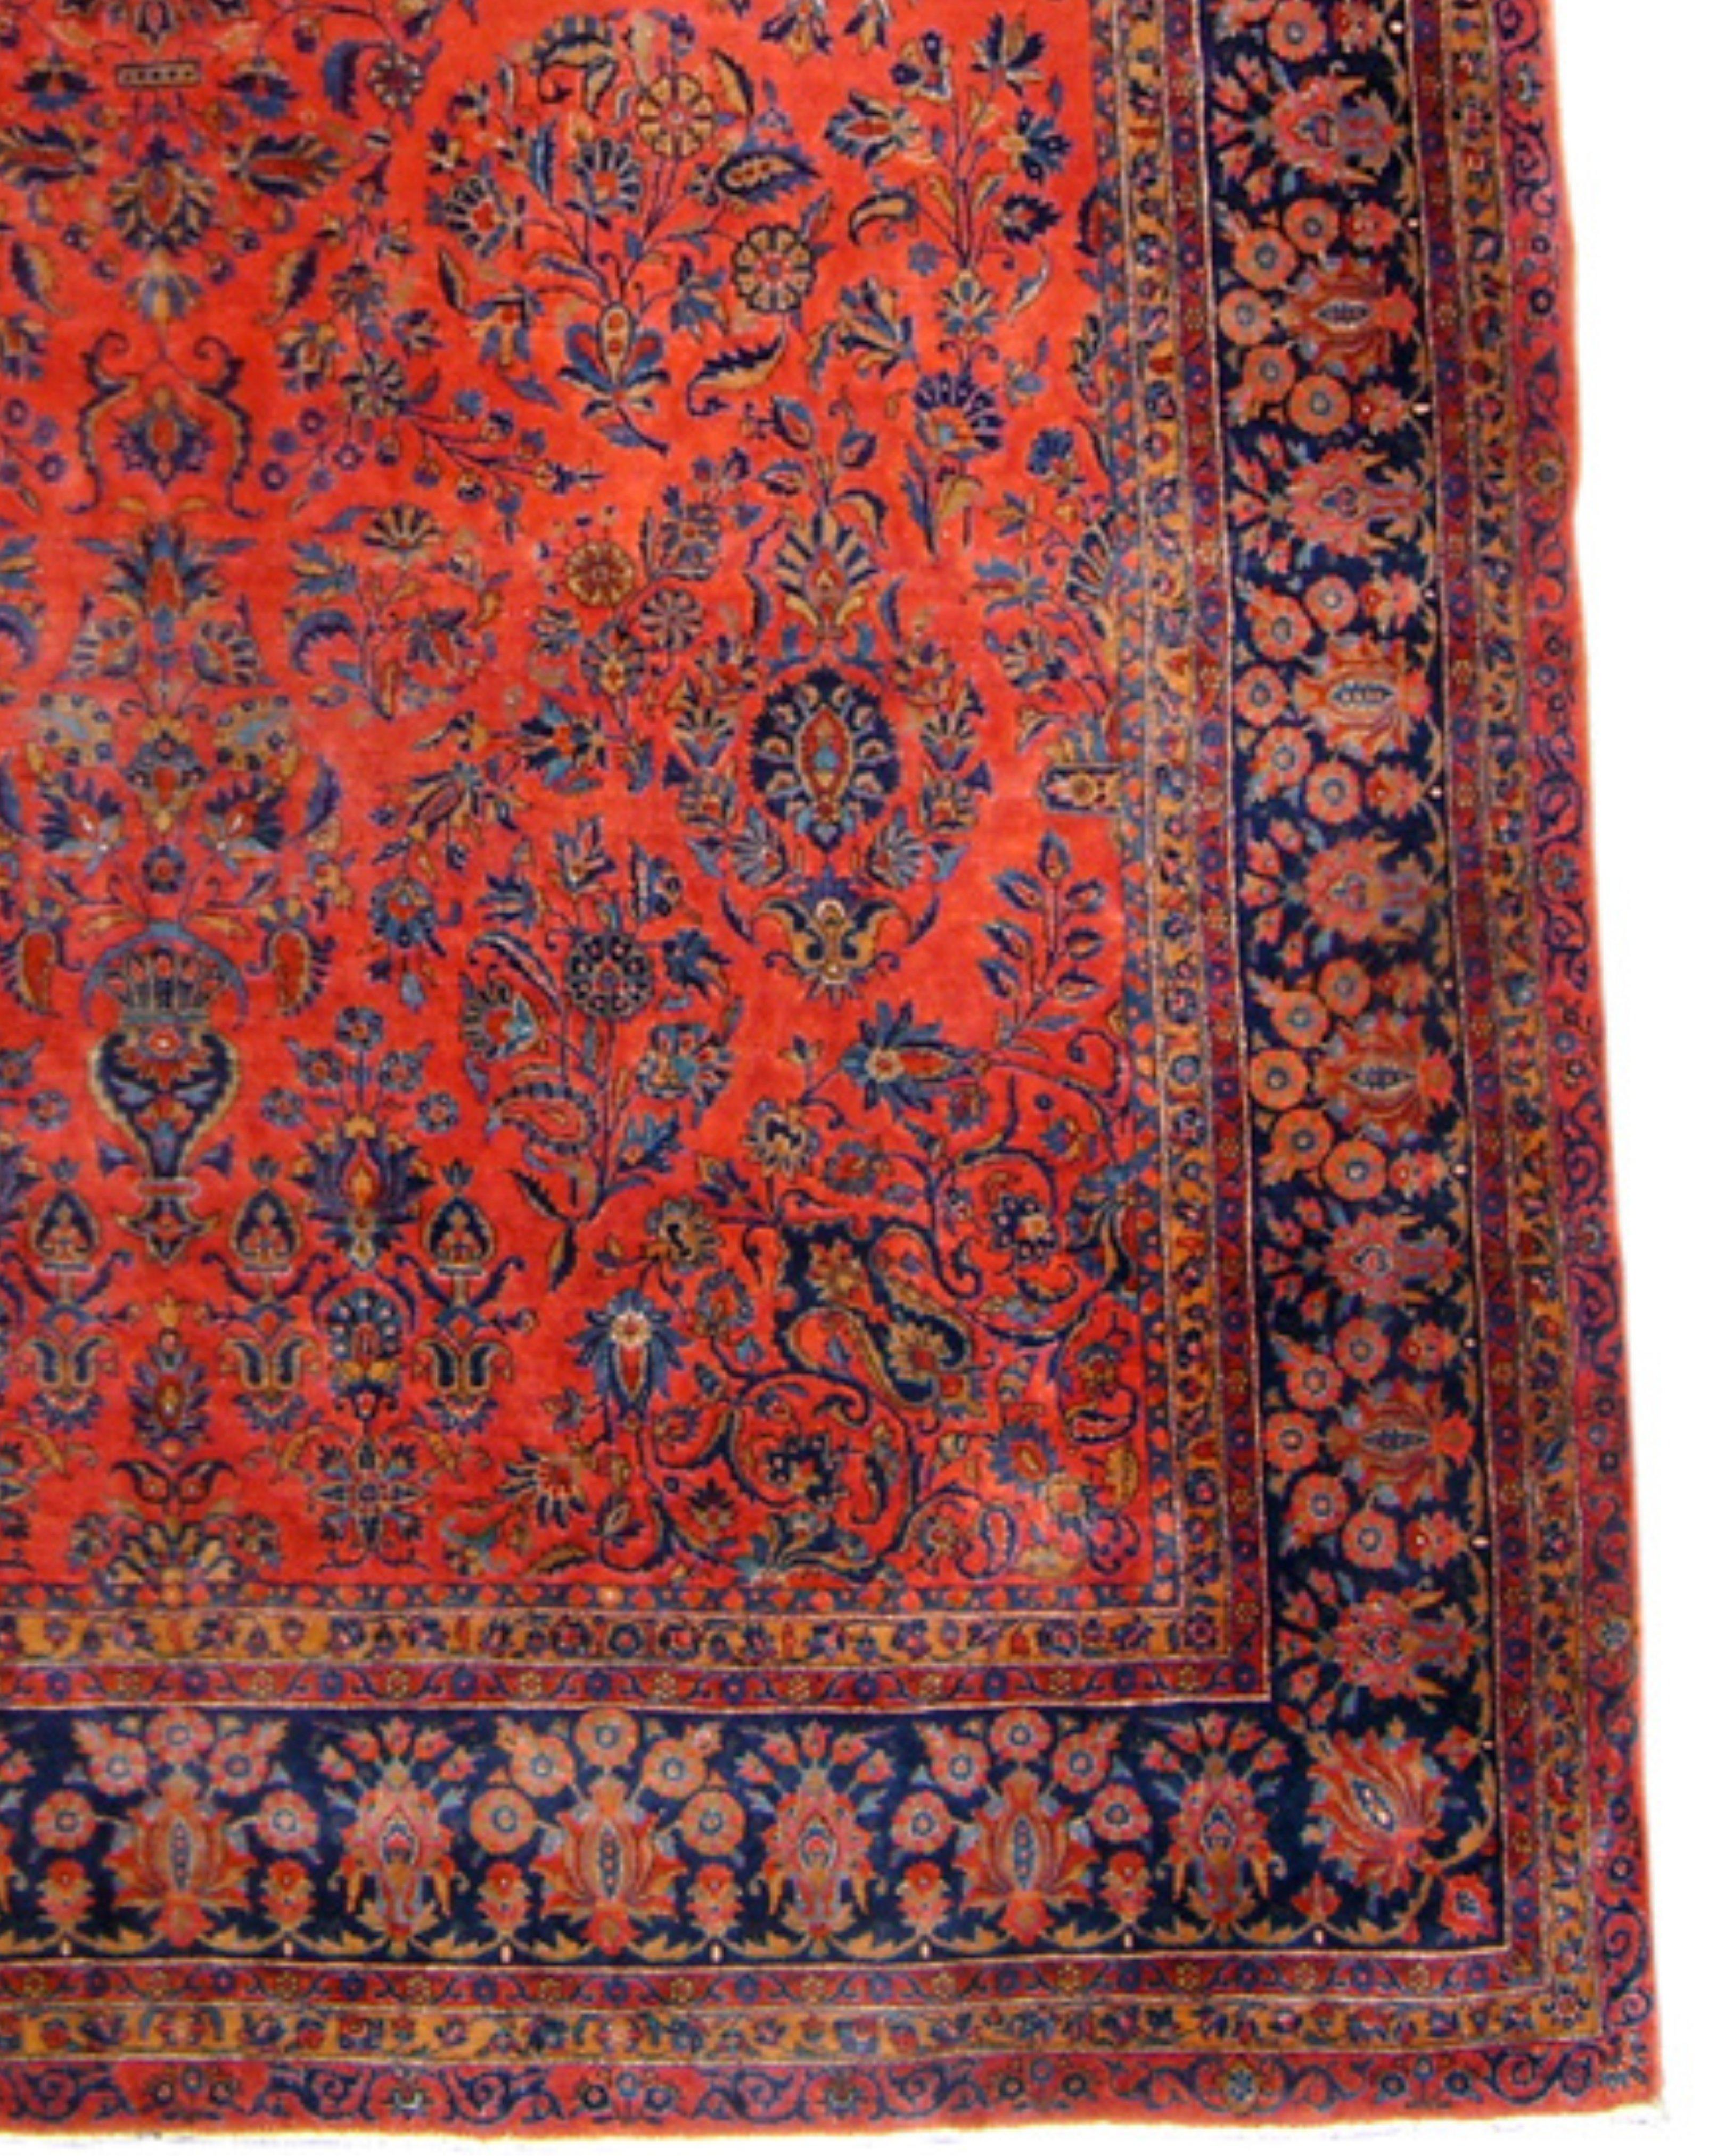 Tapis de Kashan 14986, Début du 20e siècle

Ce tapis classique du Kashan du début du XXe siècle peint des sources de fleurs émanant de pots, groupées autour de palmettes stylisées ou disposées en bouquets individuels. Alors que l'impression première